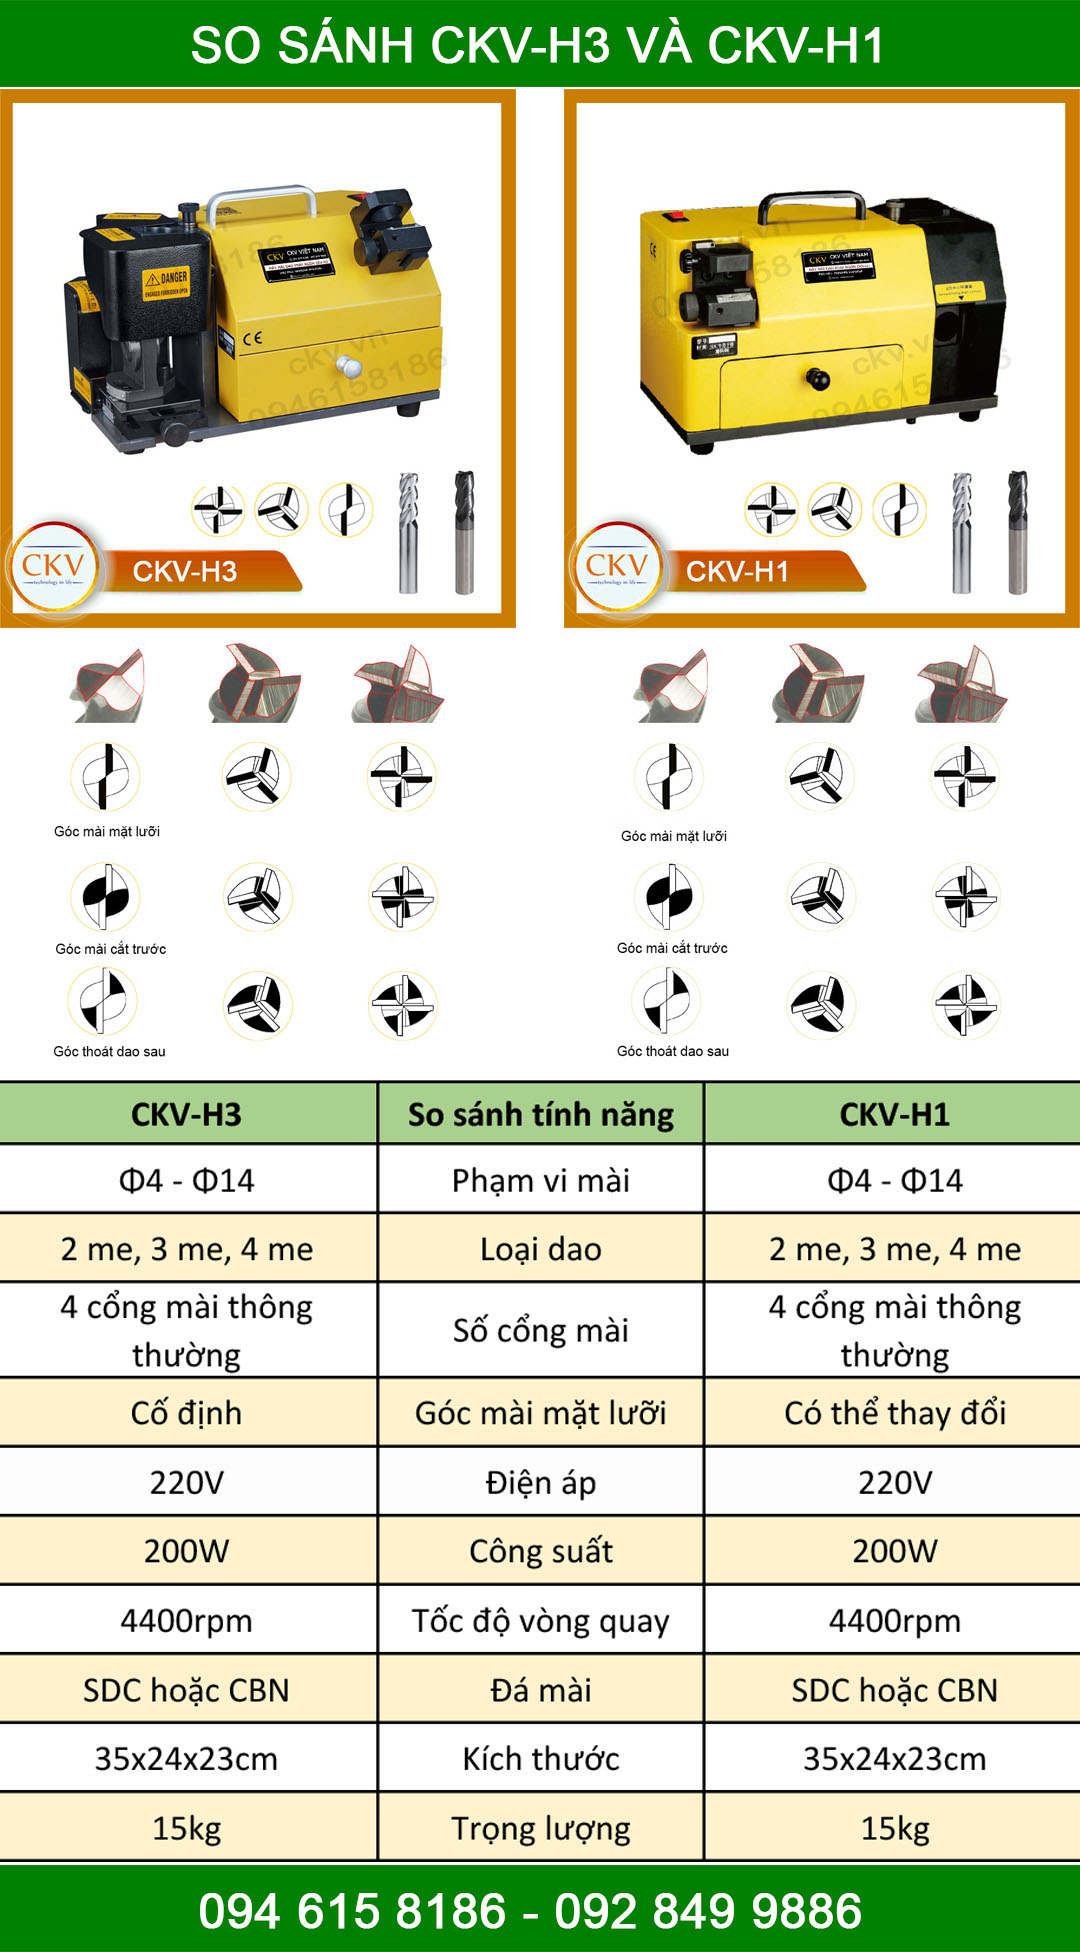 So sánh máy mài dao phay ngón CKV-H3 và CKV-H1